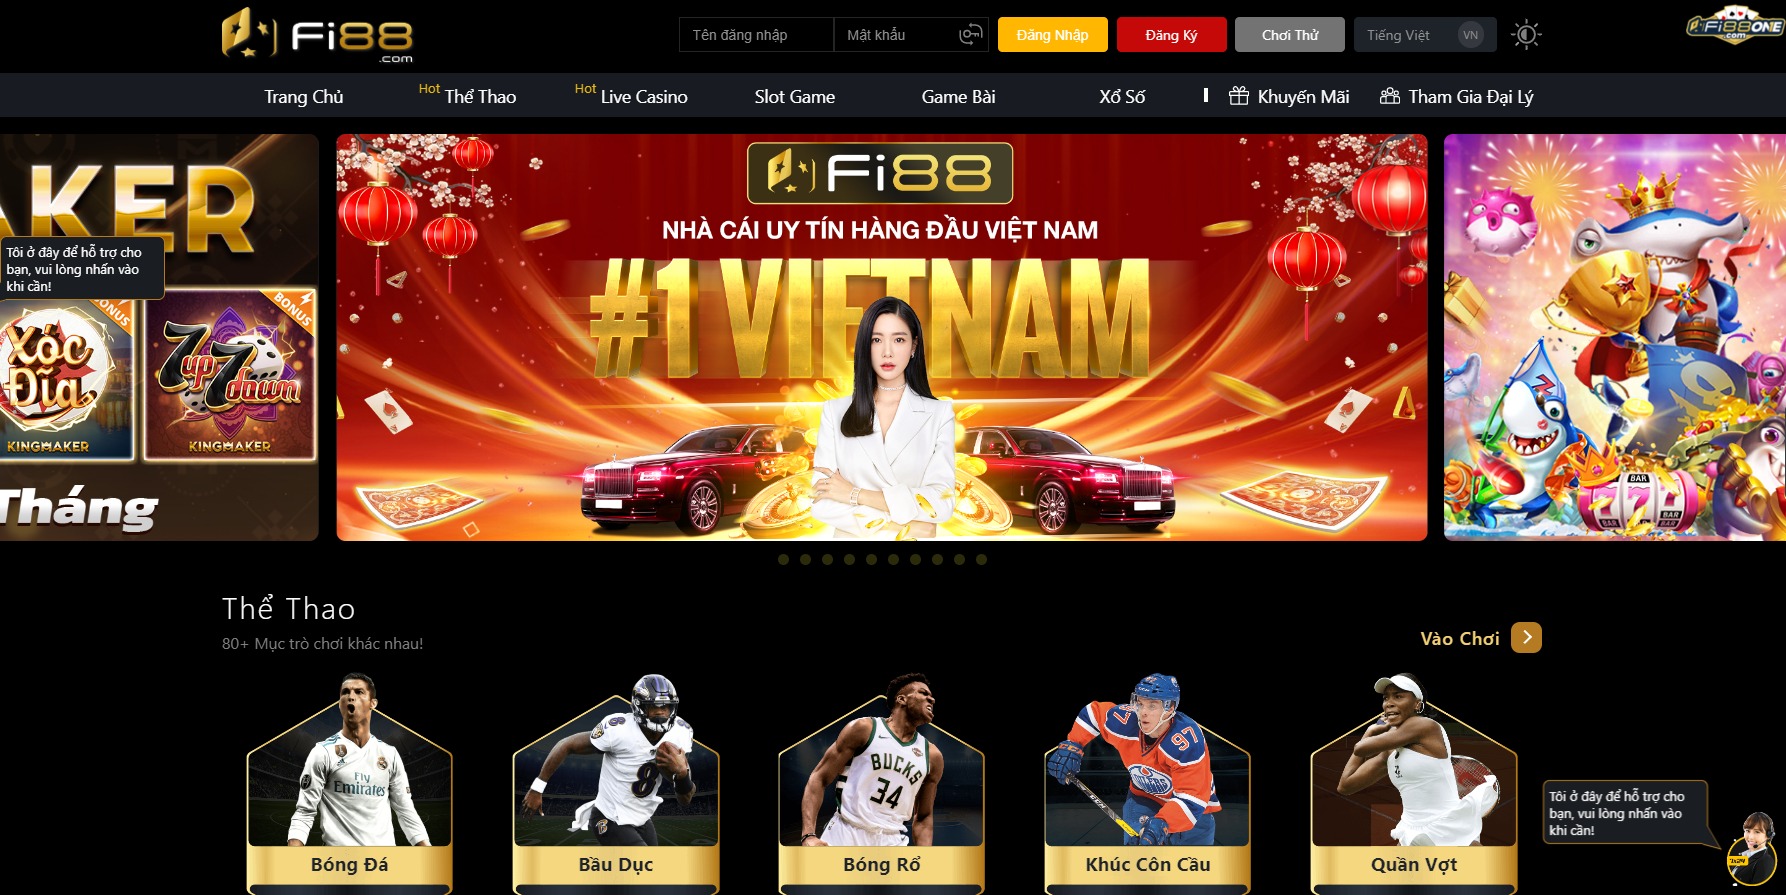 Fi88 là một sân chơi casino chuyên nghiệp hàng đầu châu Á